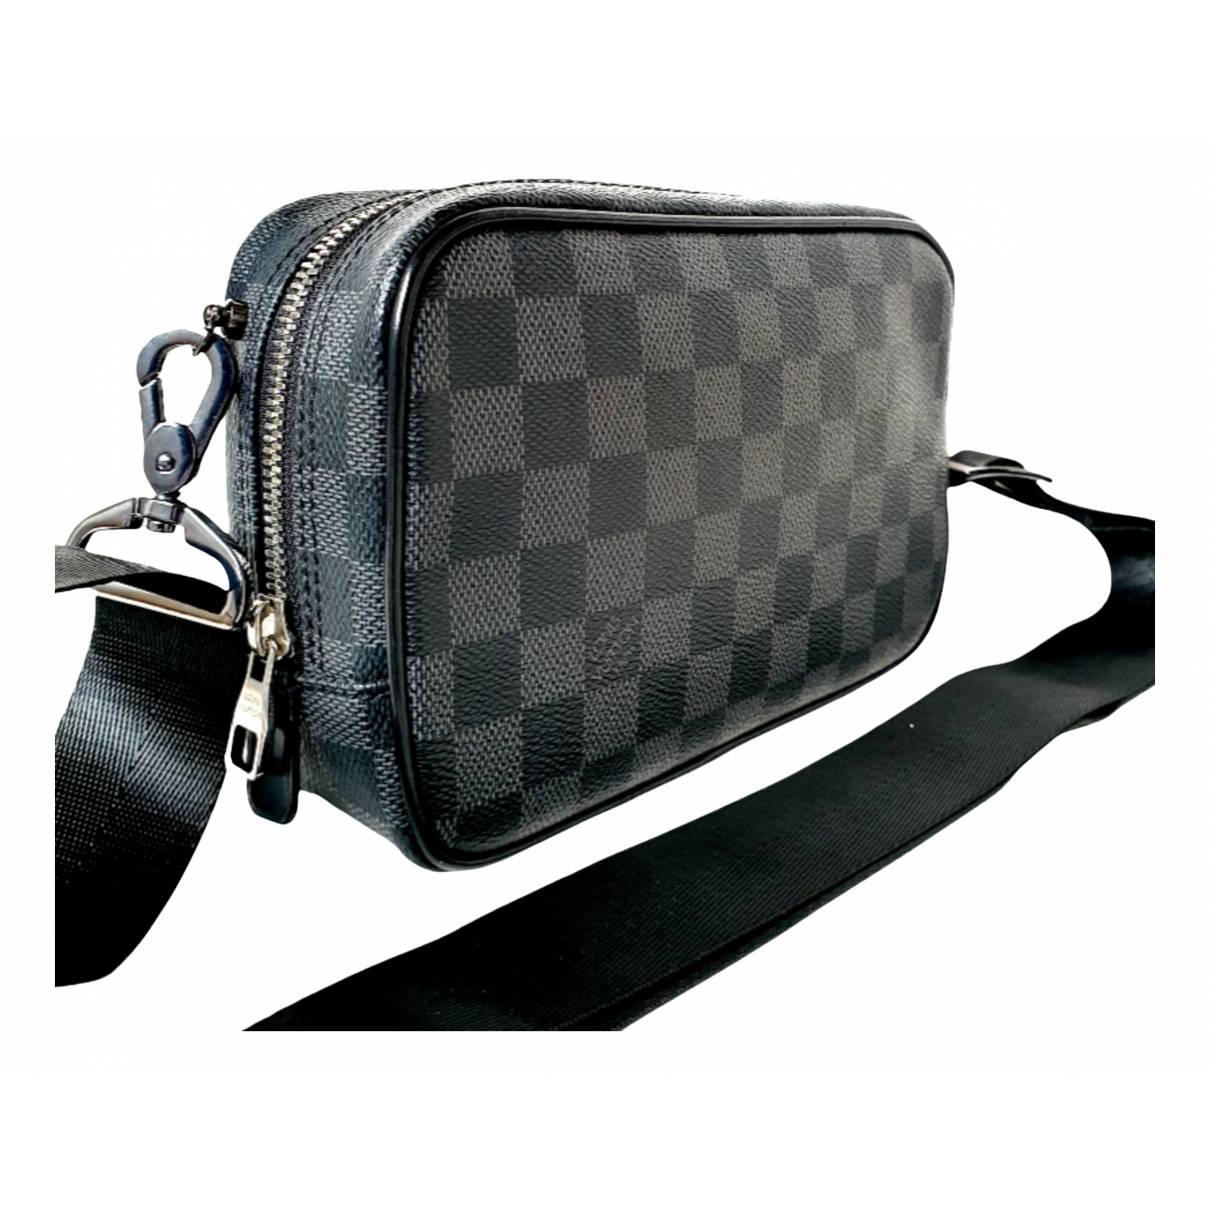 Cloth bag Louis Vuitton Black in Cloth - 25152065